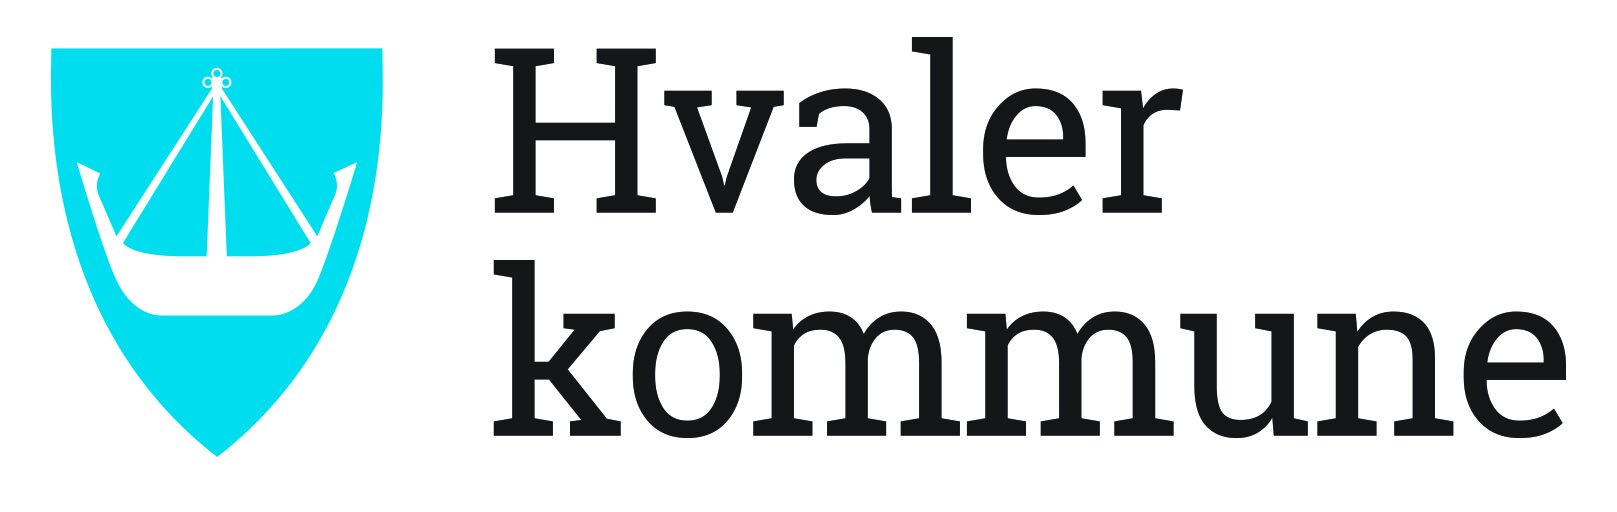 Hvaler_kommune_logo_hovedversjon_liten.jpeg